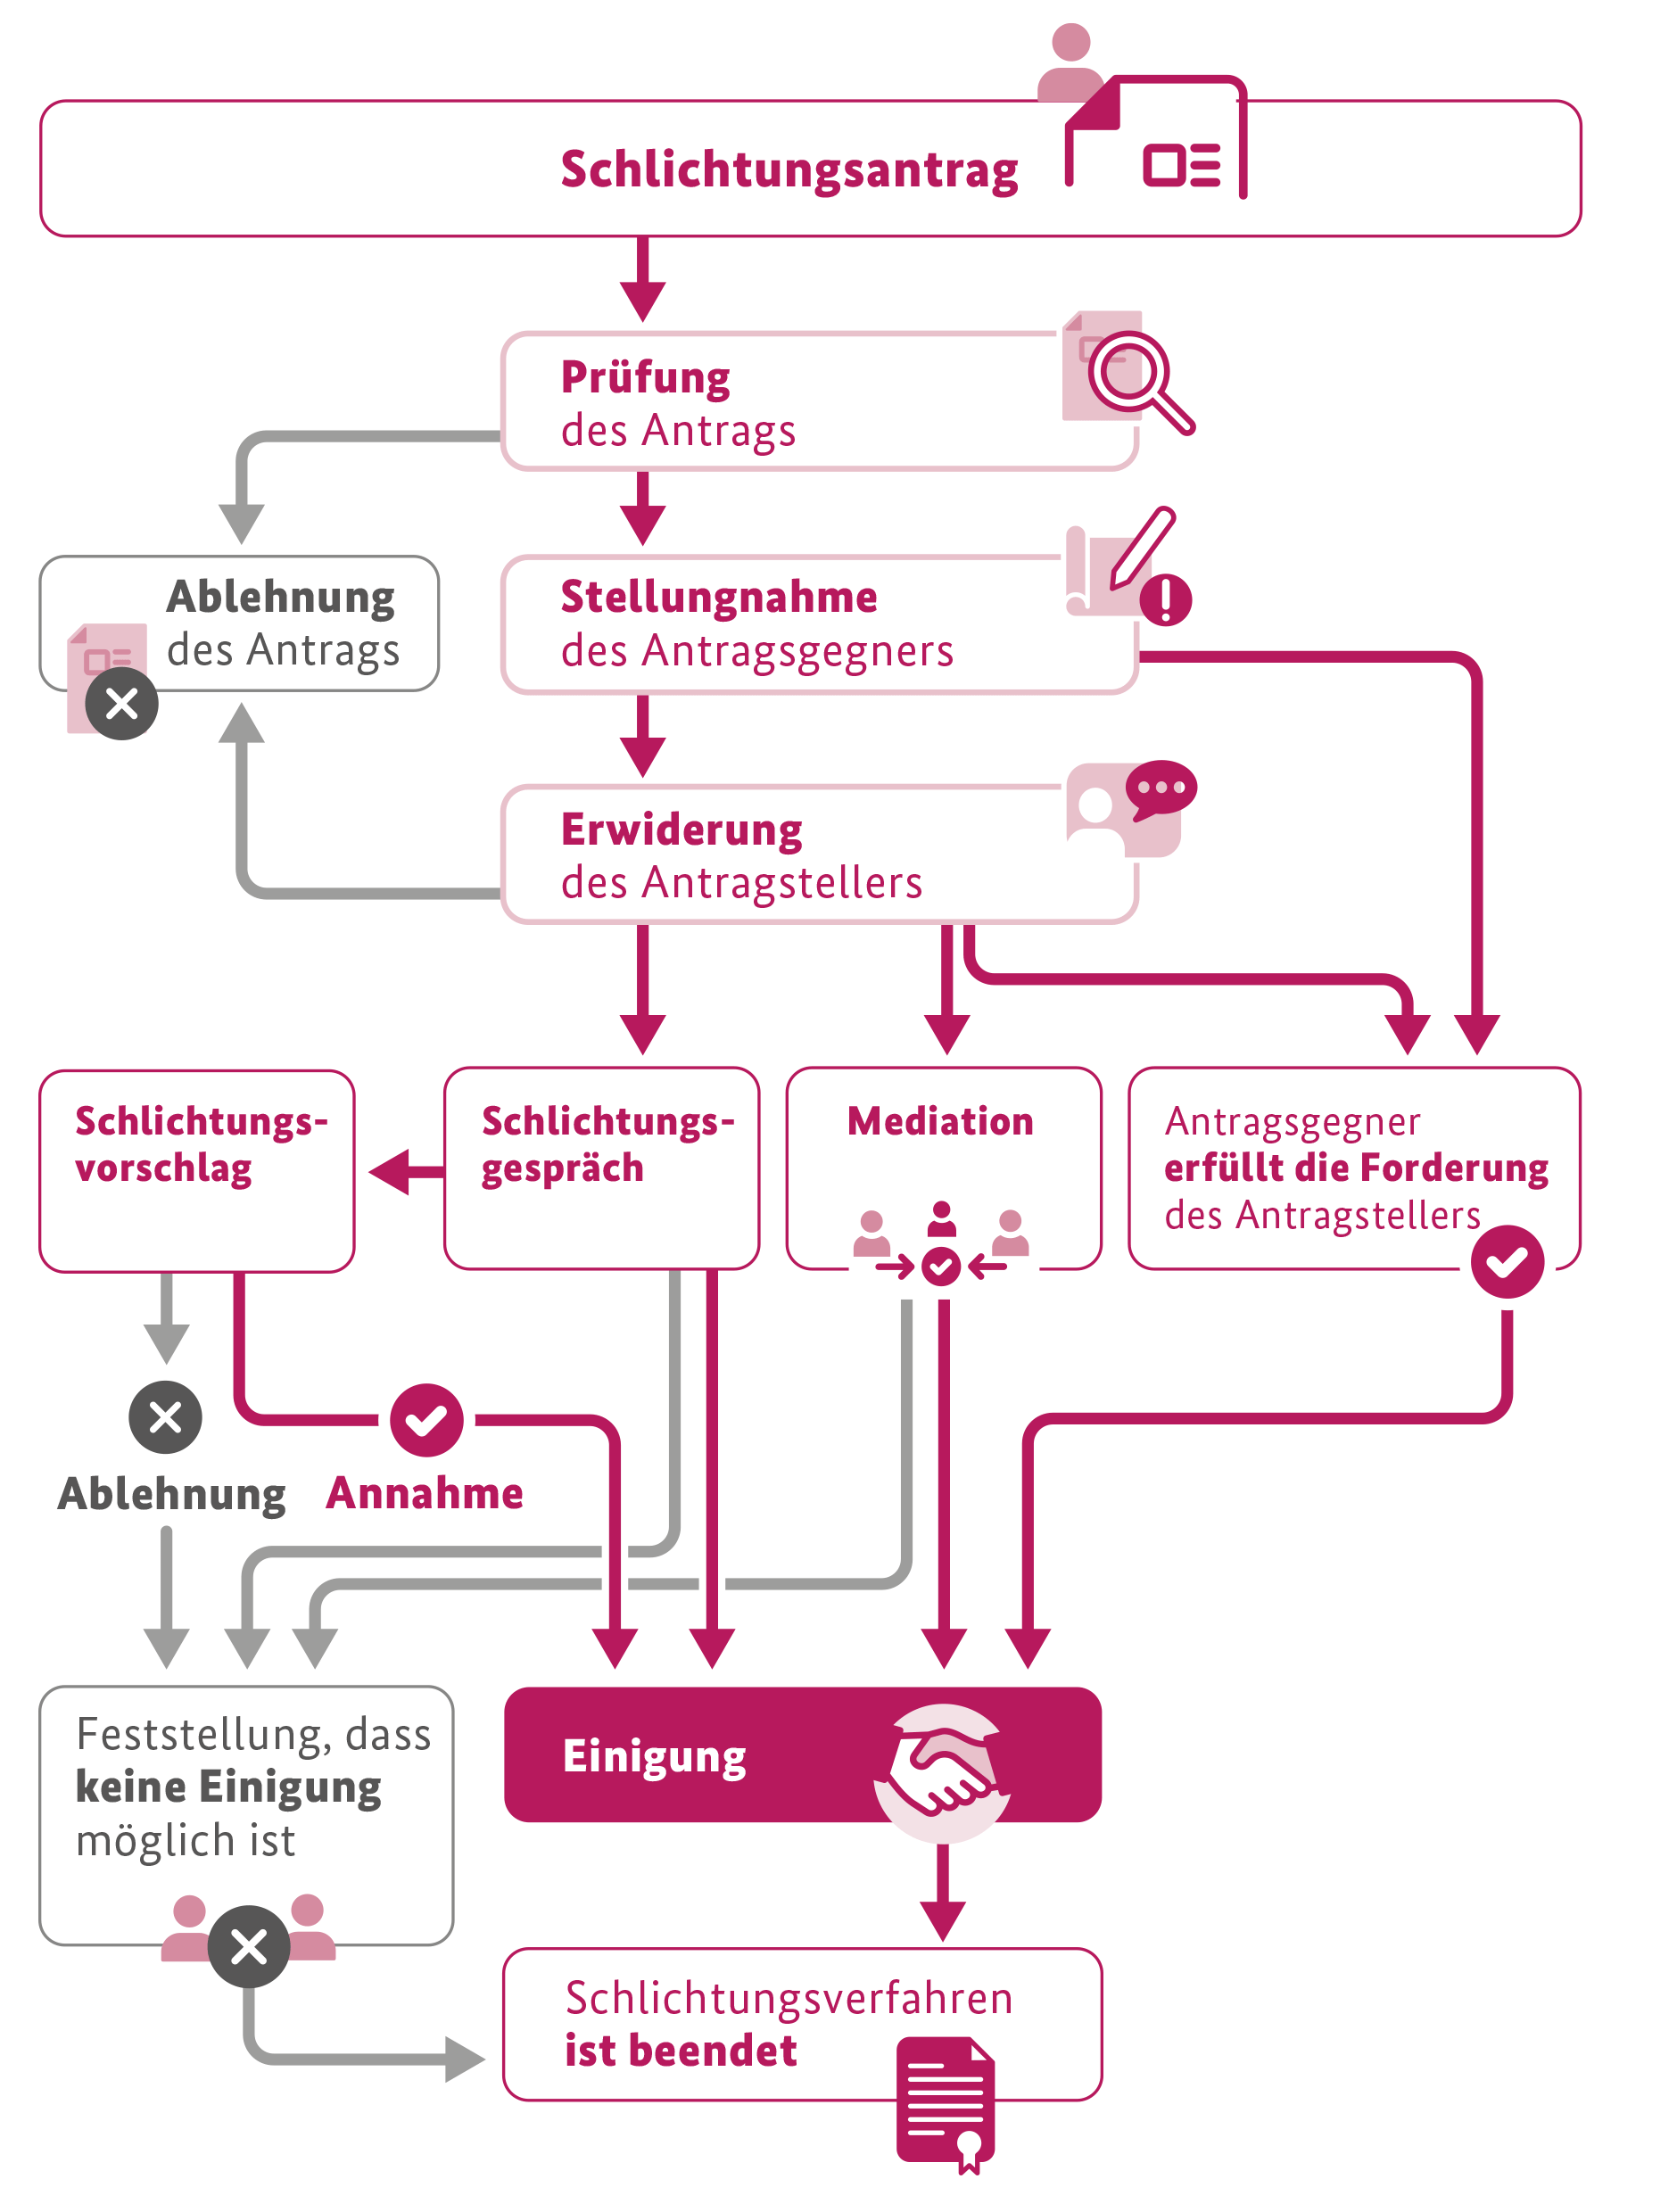 Der Ablauf des Schlichtungsverfahrens wird schematisch dargestellt